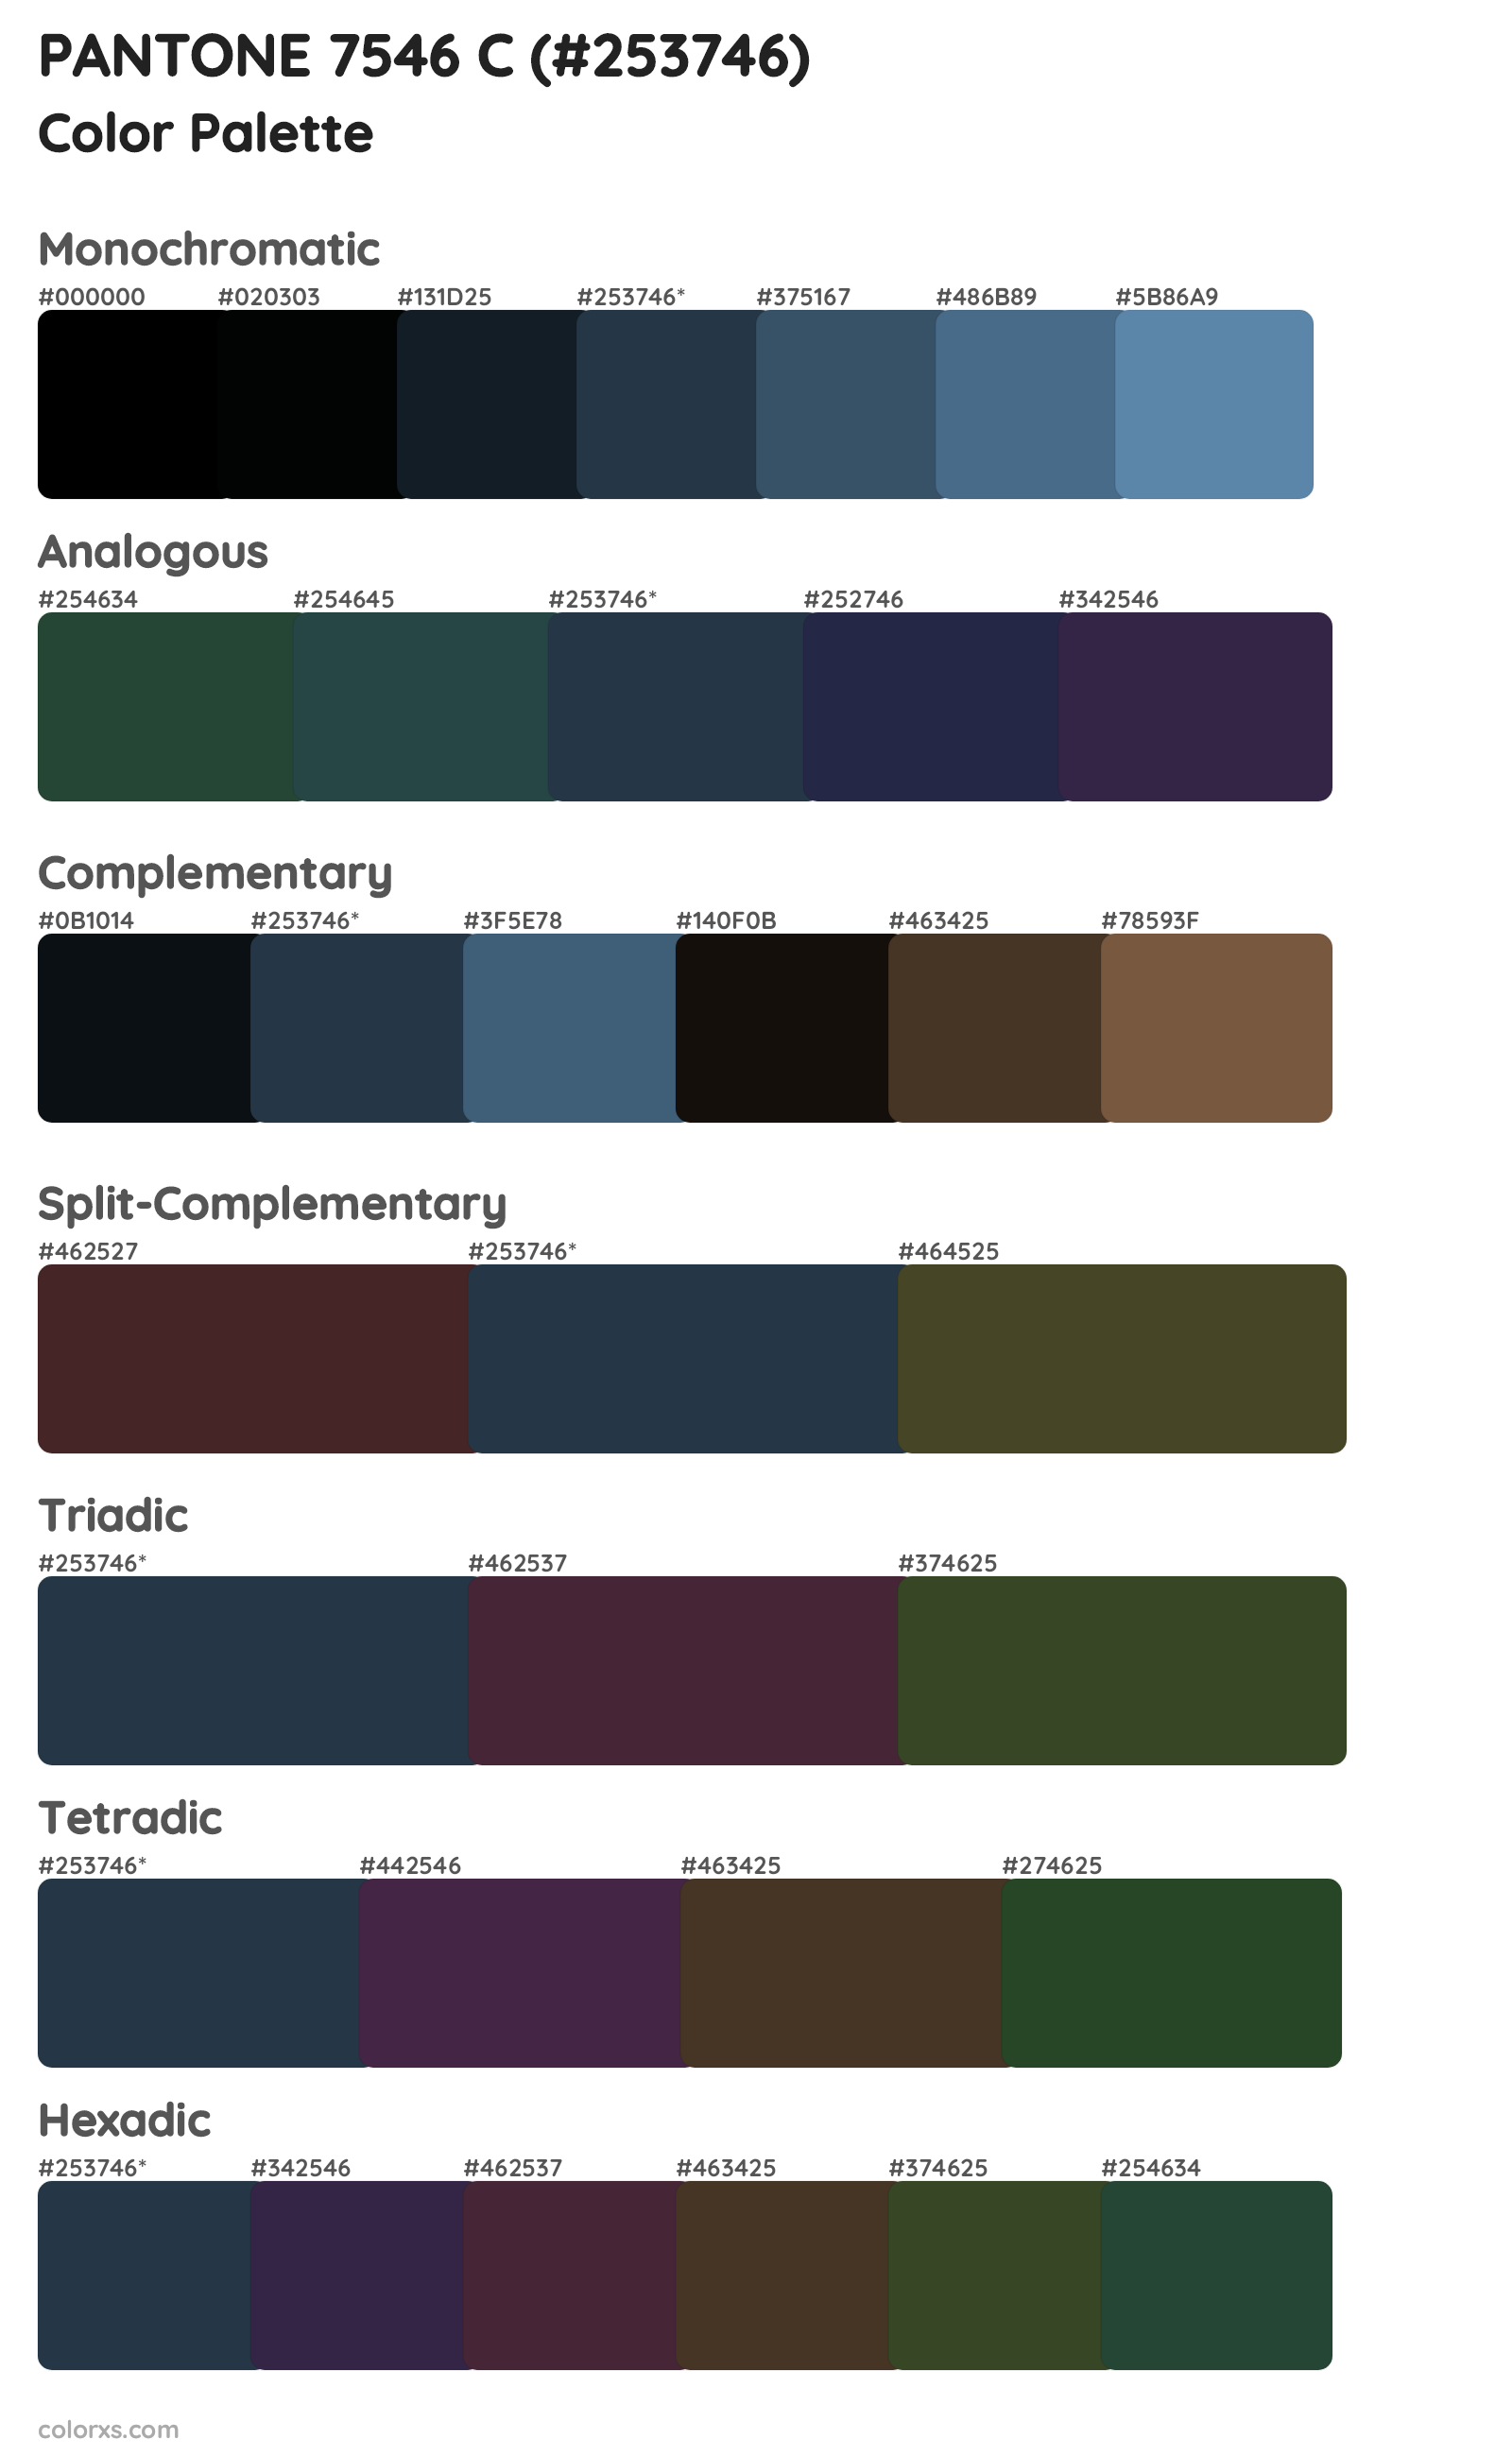 PANTONE 7546 C Color Scheme Palettes